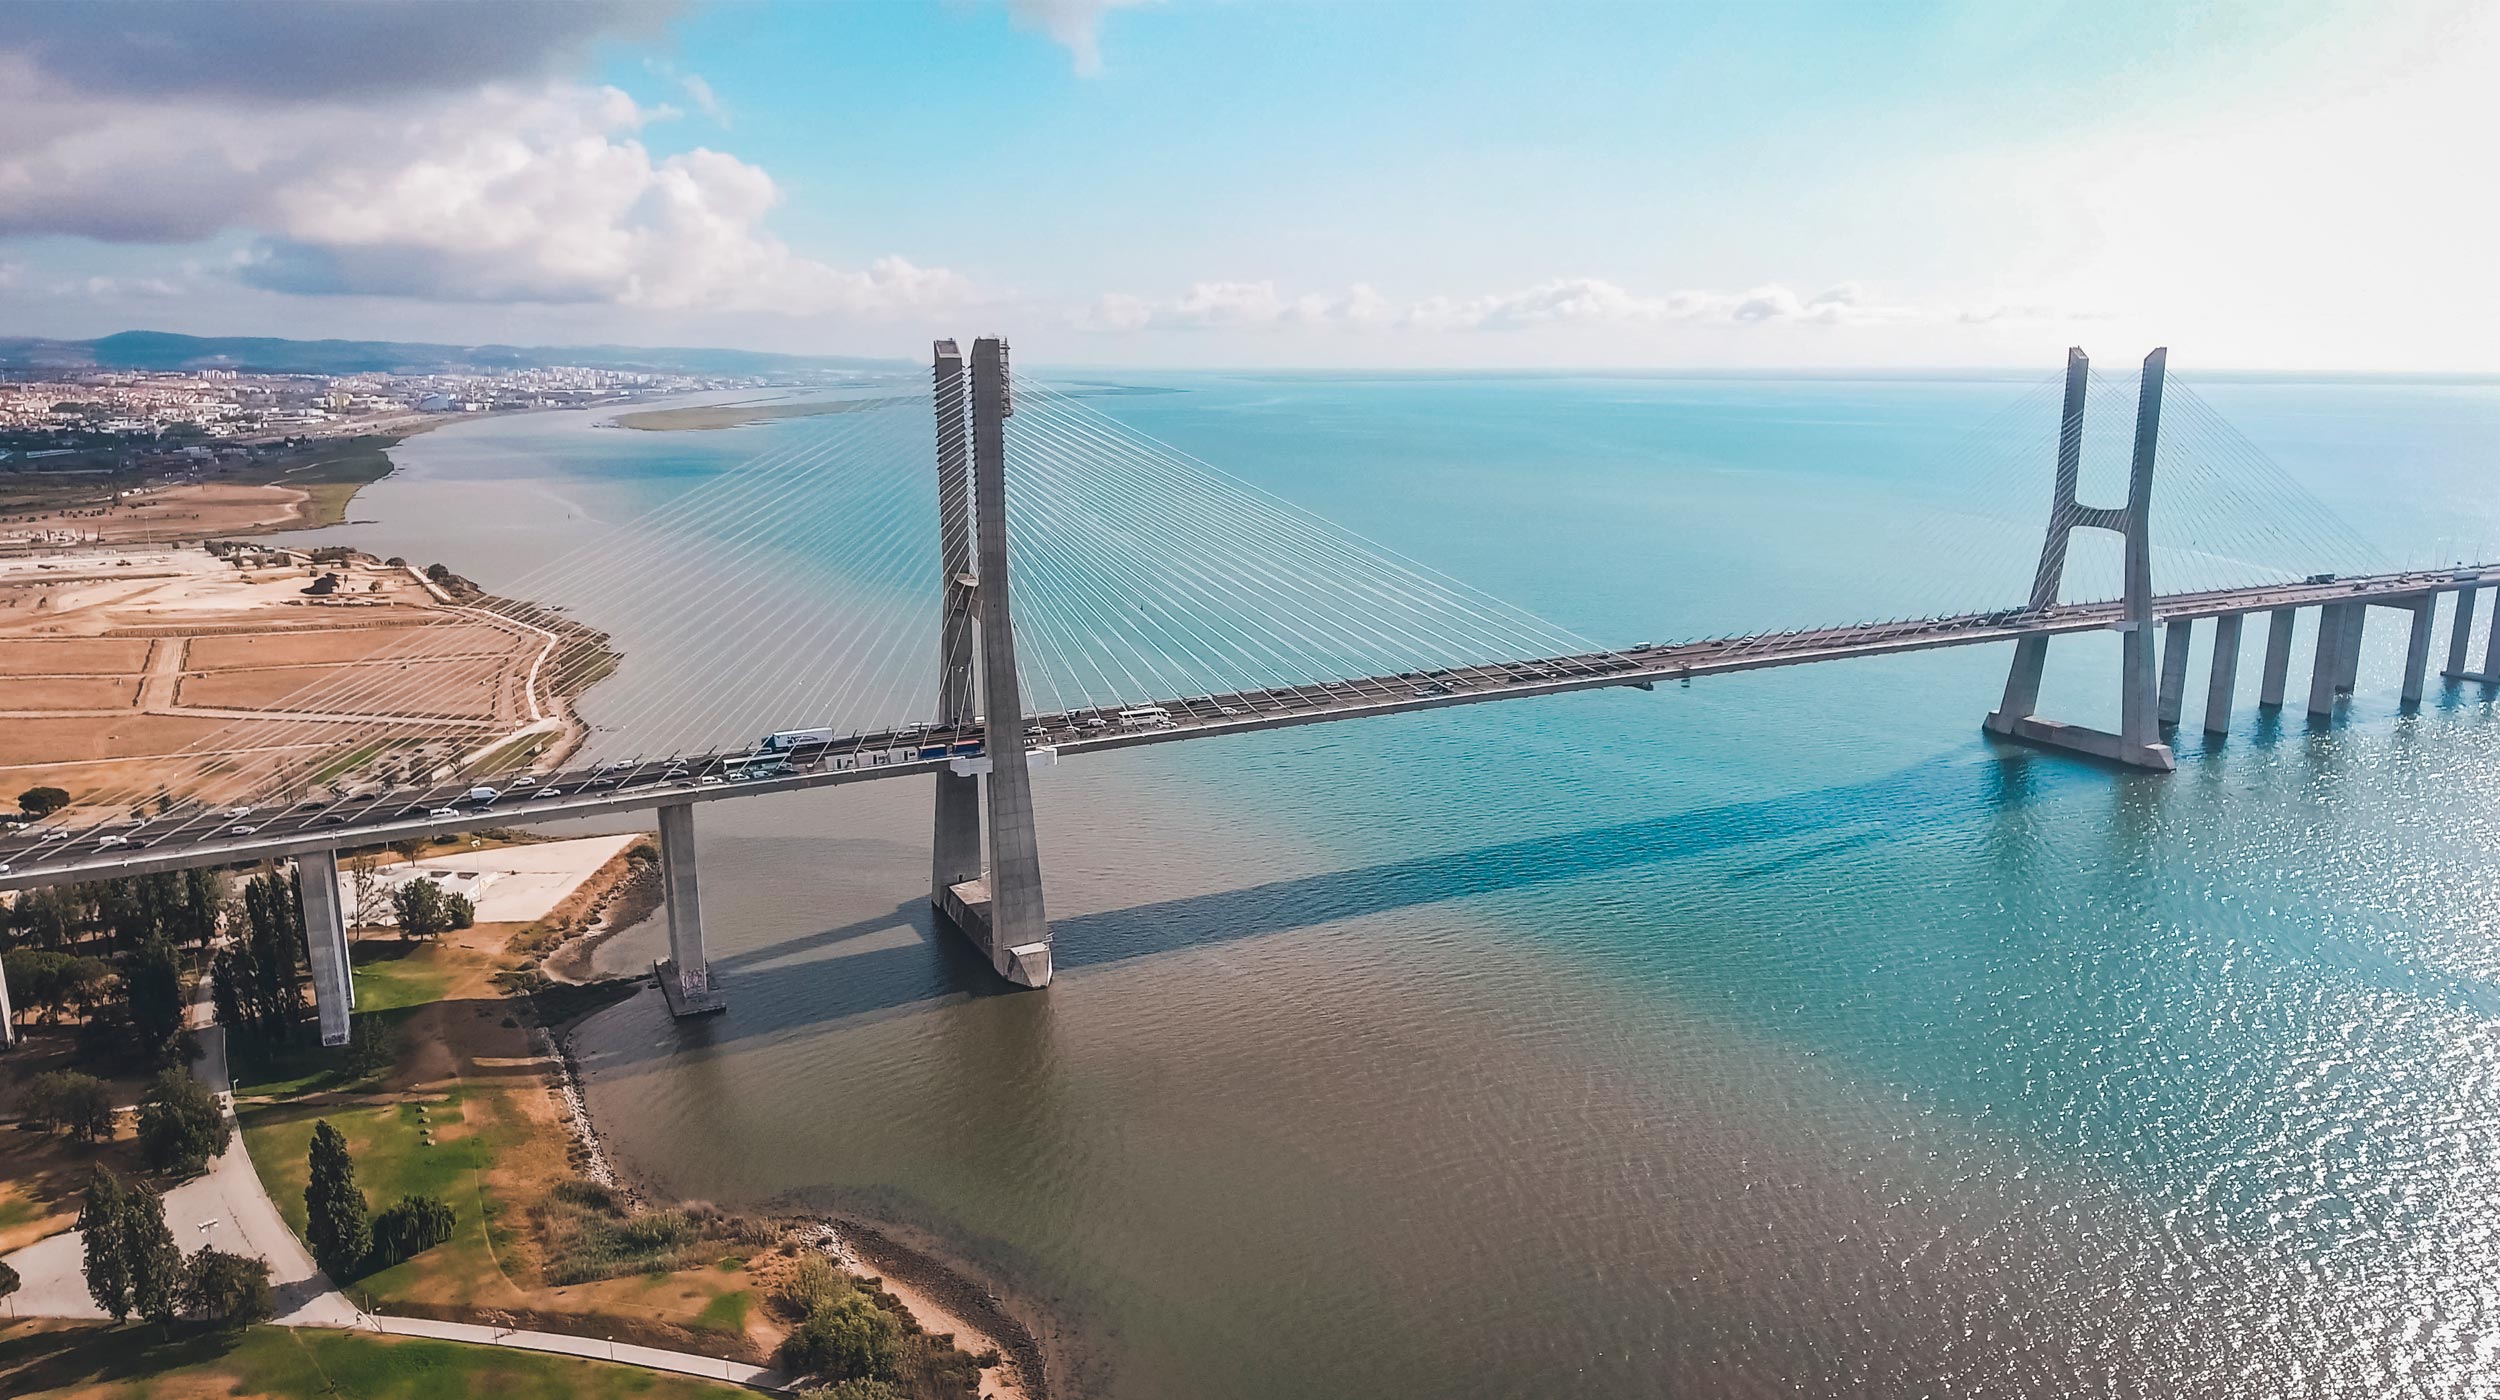 El puente Vasco da Gama es un puente atirantado que, situado sobre el río Tajo, conecta el municipio de Alcochete con el de Lisboa, Portugal. Con más de 17,3 km de longitud, es el puente más largo de la Unión Europea.